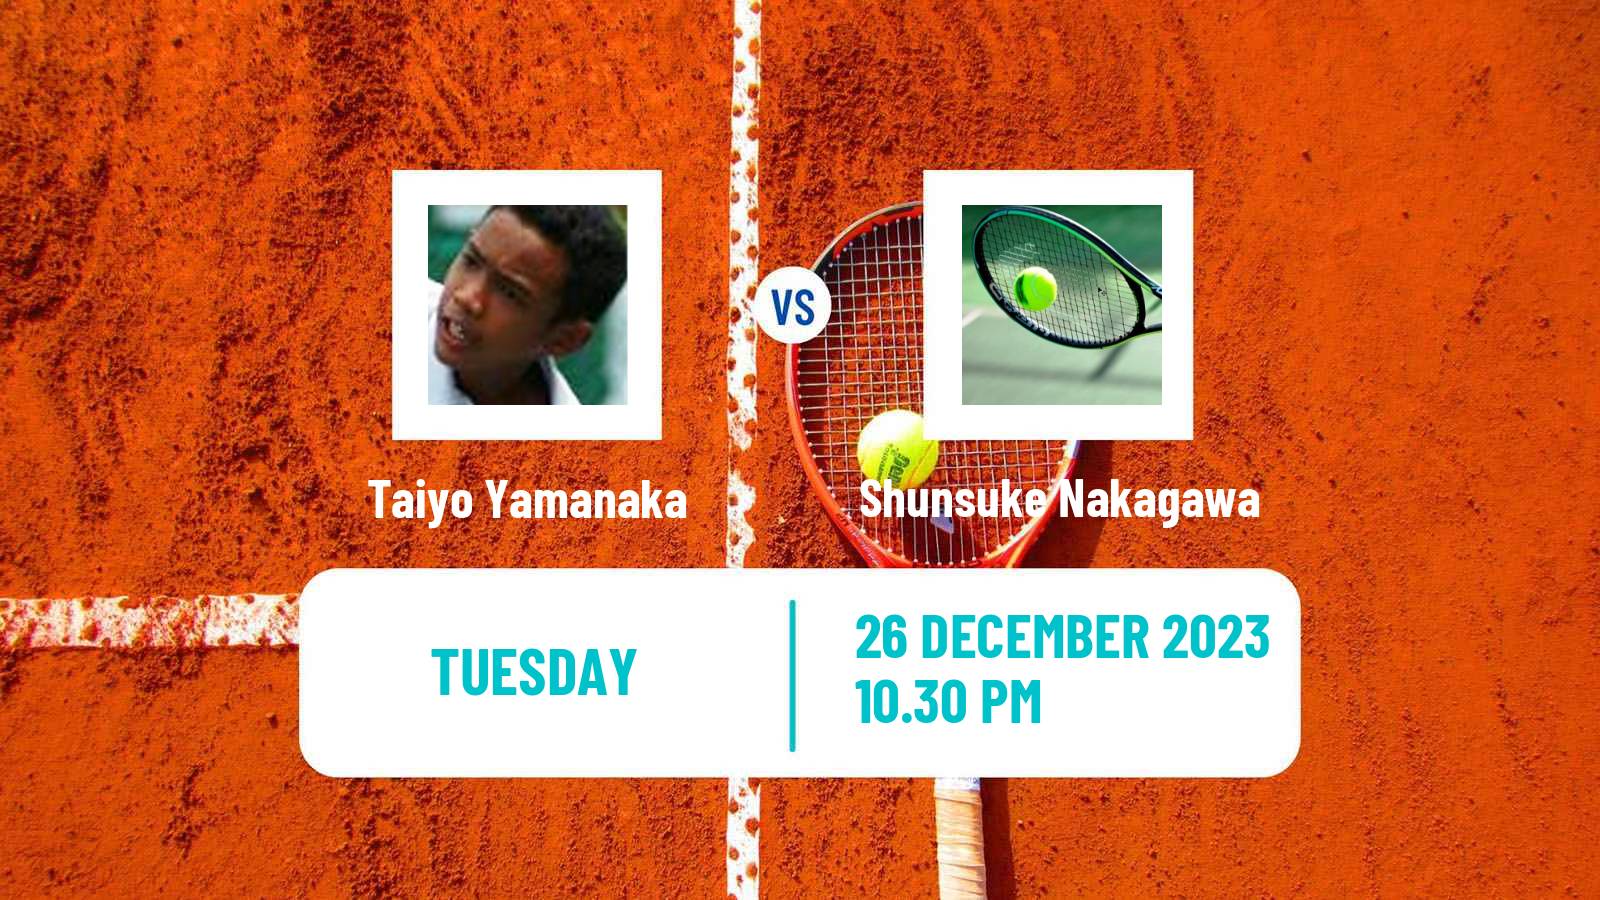 Tennis ITF M15 Yanagawa 2 Men Taiyo Yamanaka - Shunsuke Nakagawa